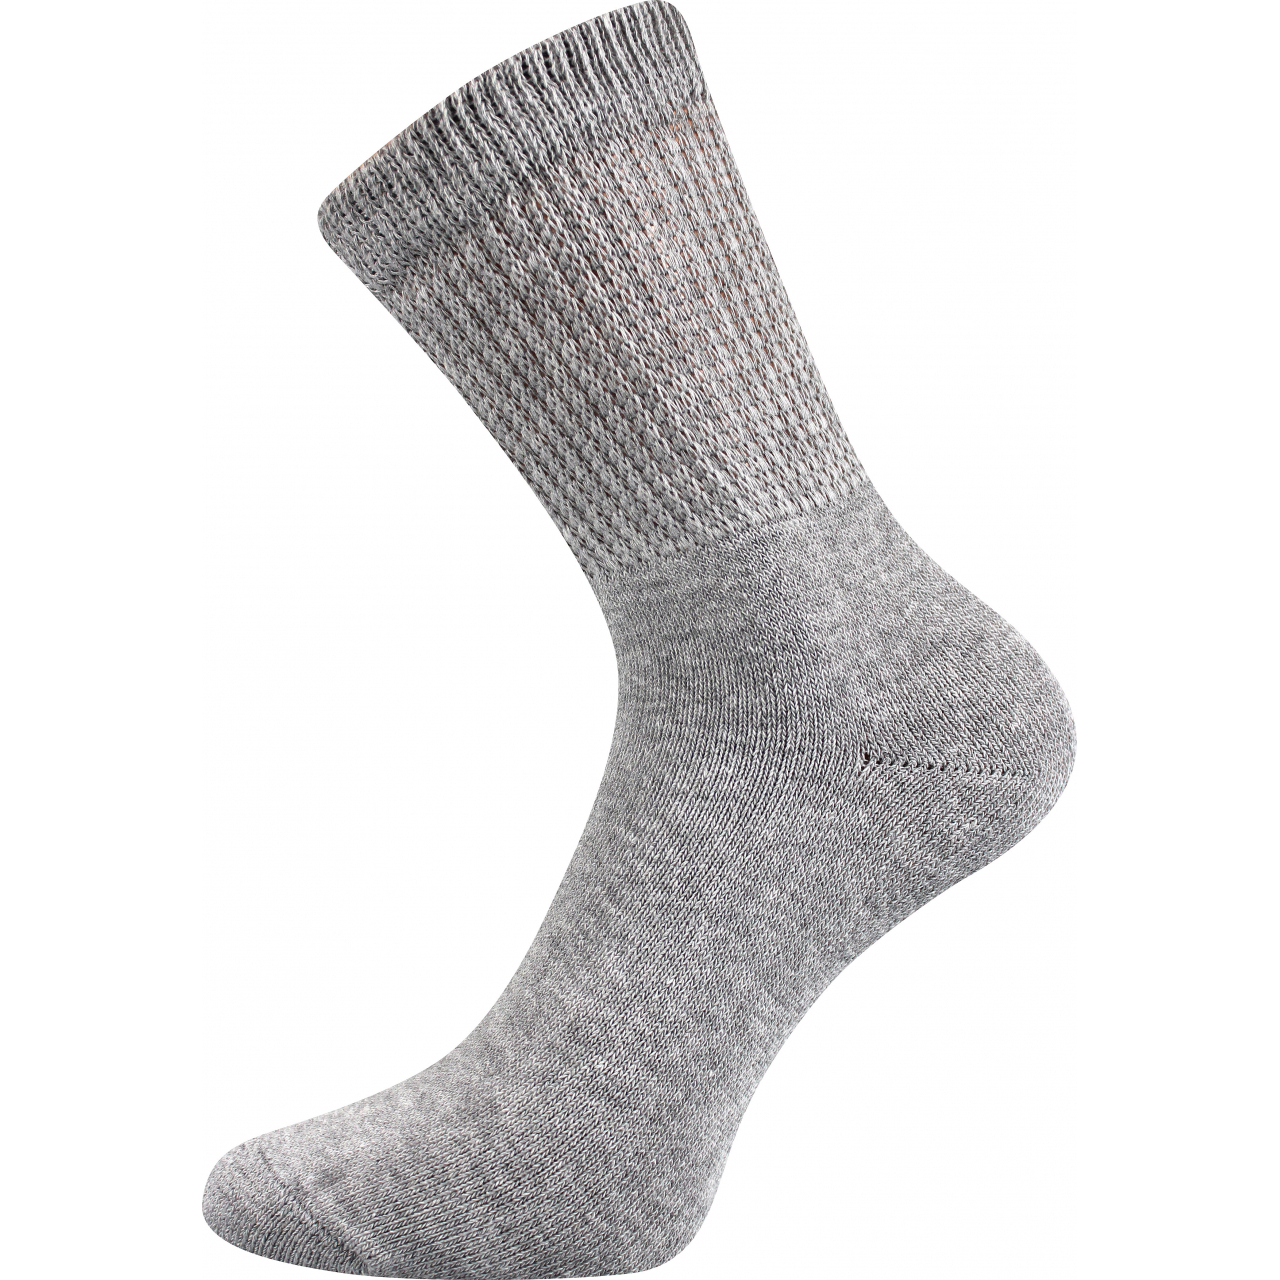 Ponožky trekingové unisex Boma 012-41-39 I - světle šedé, 43-46